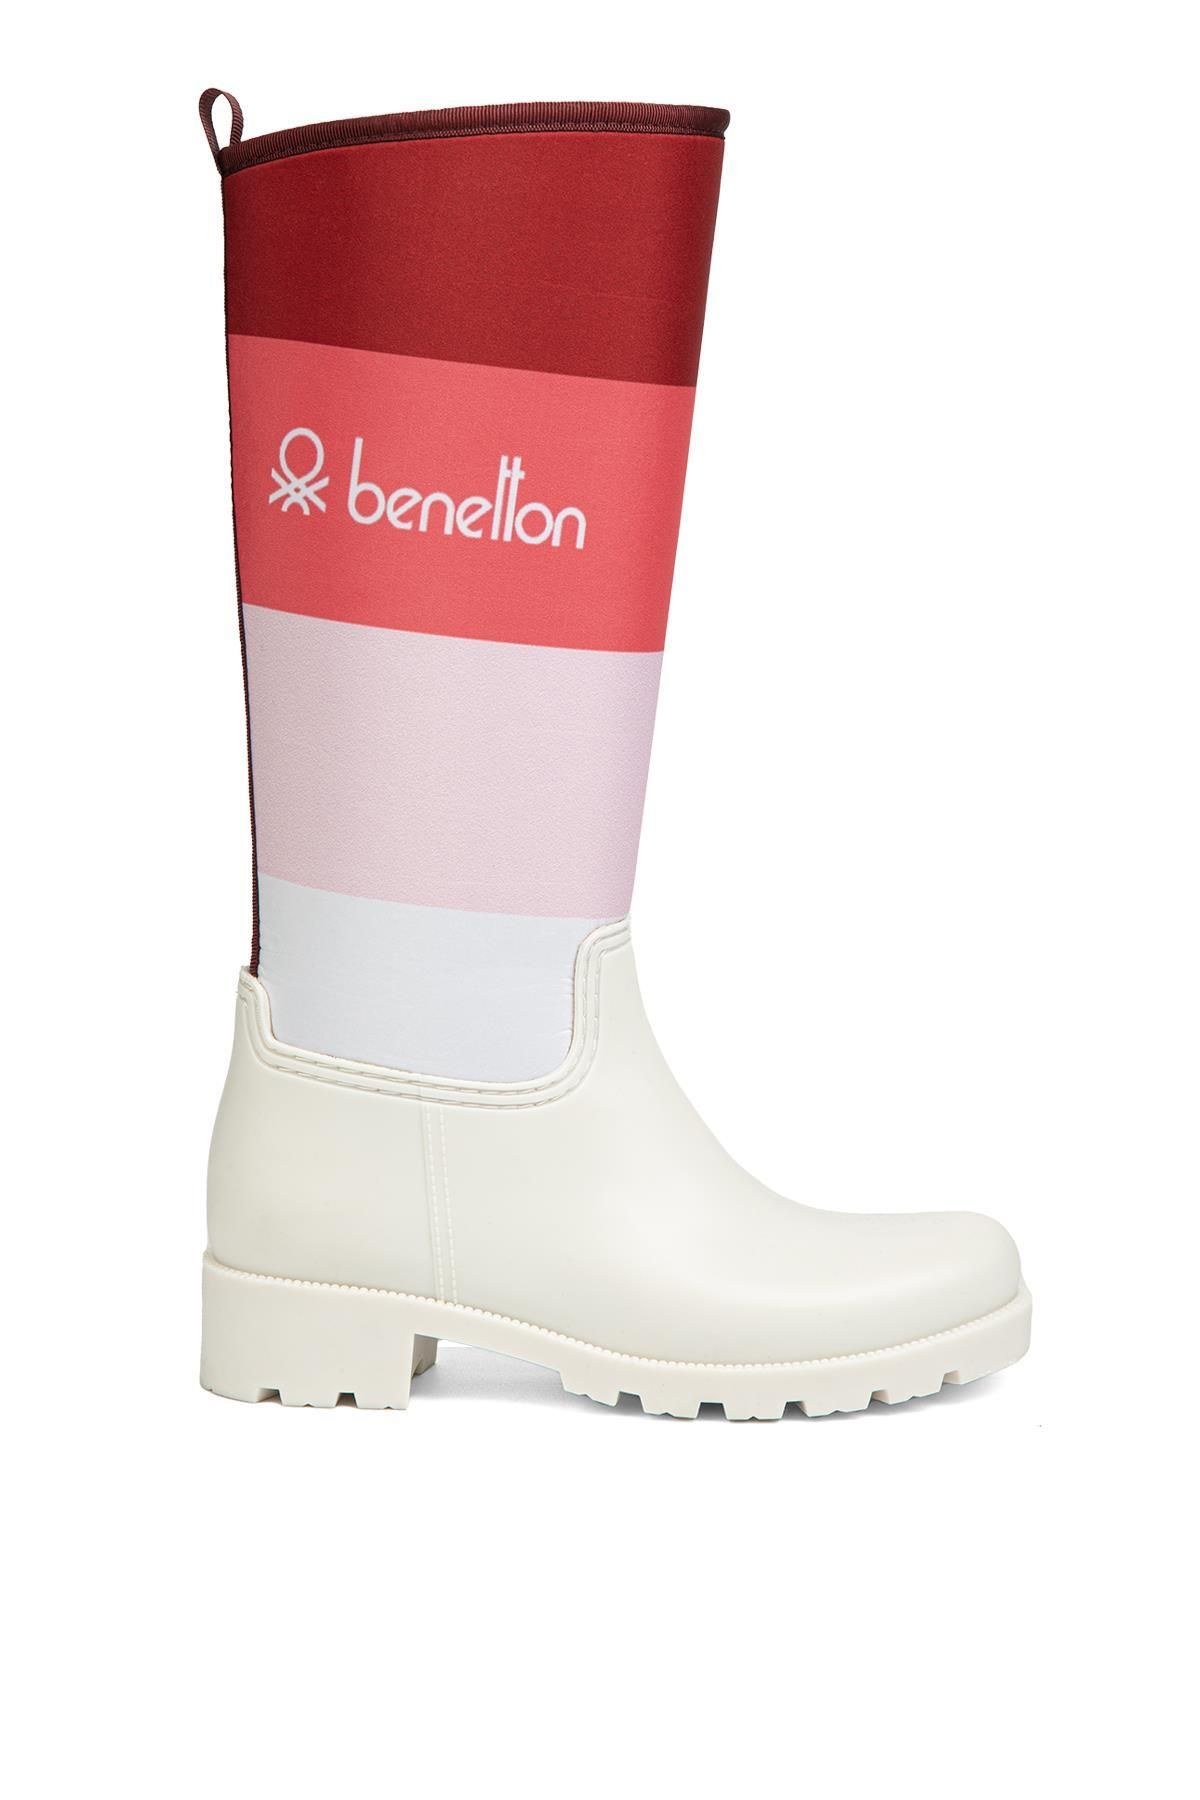 Benetton ® | BN-50010 - 34124 Beyaz Pembe - Kadın Çizme